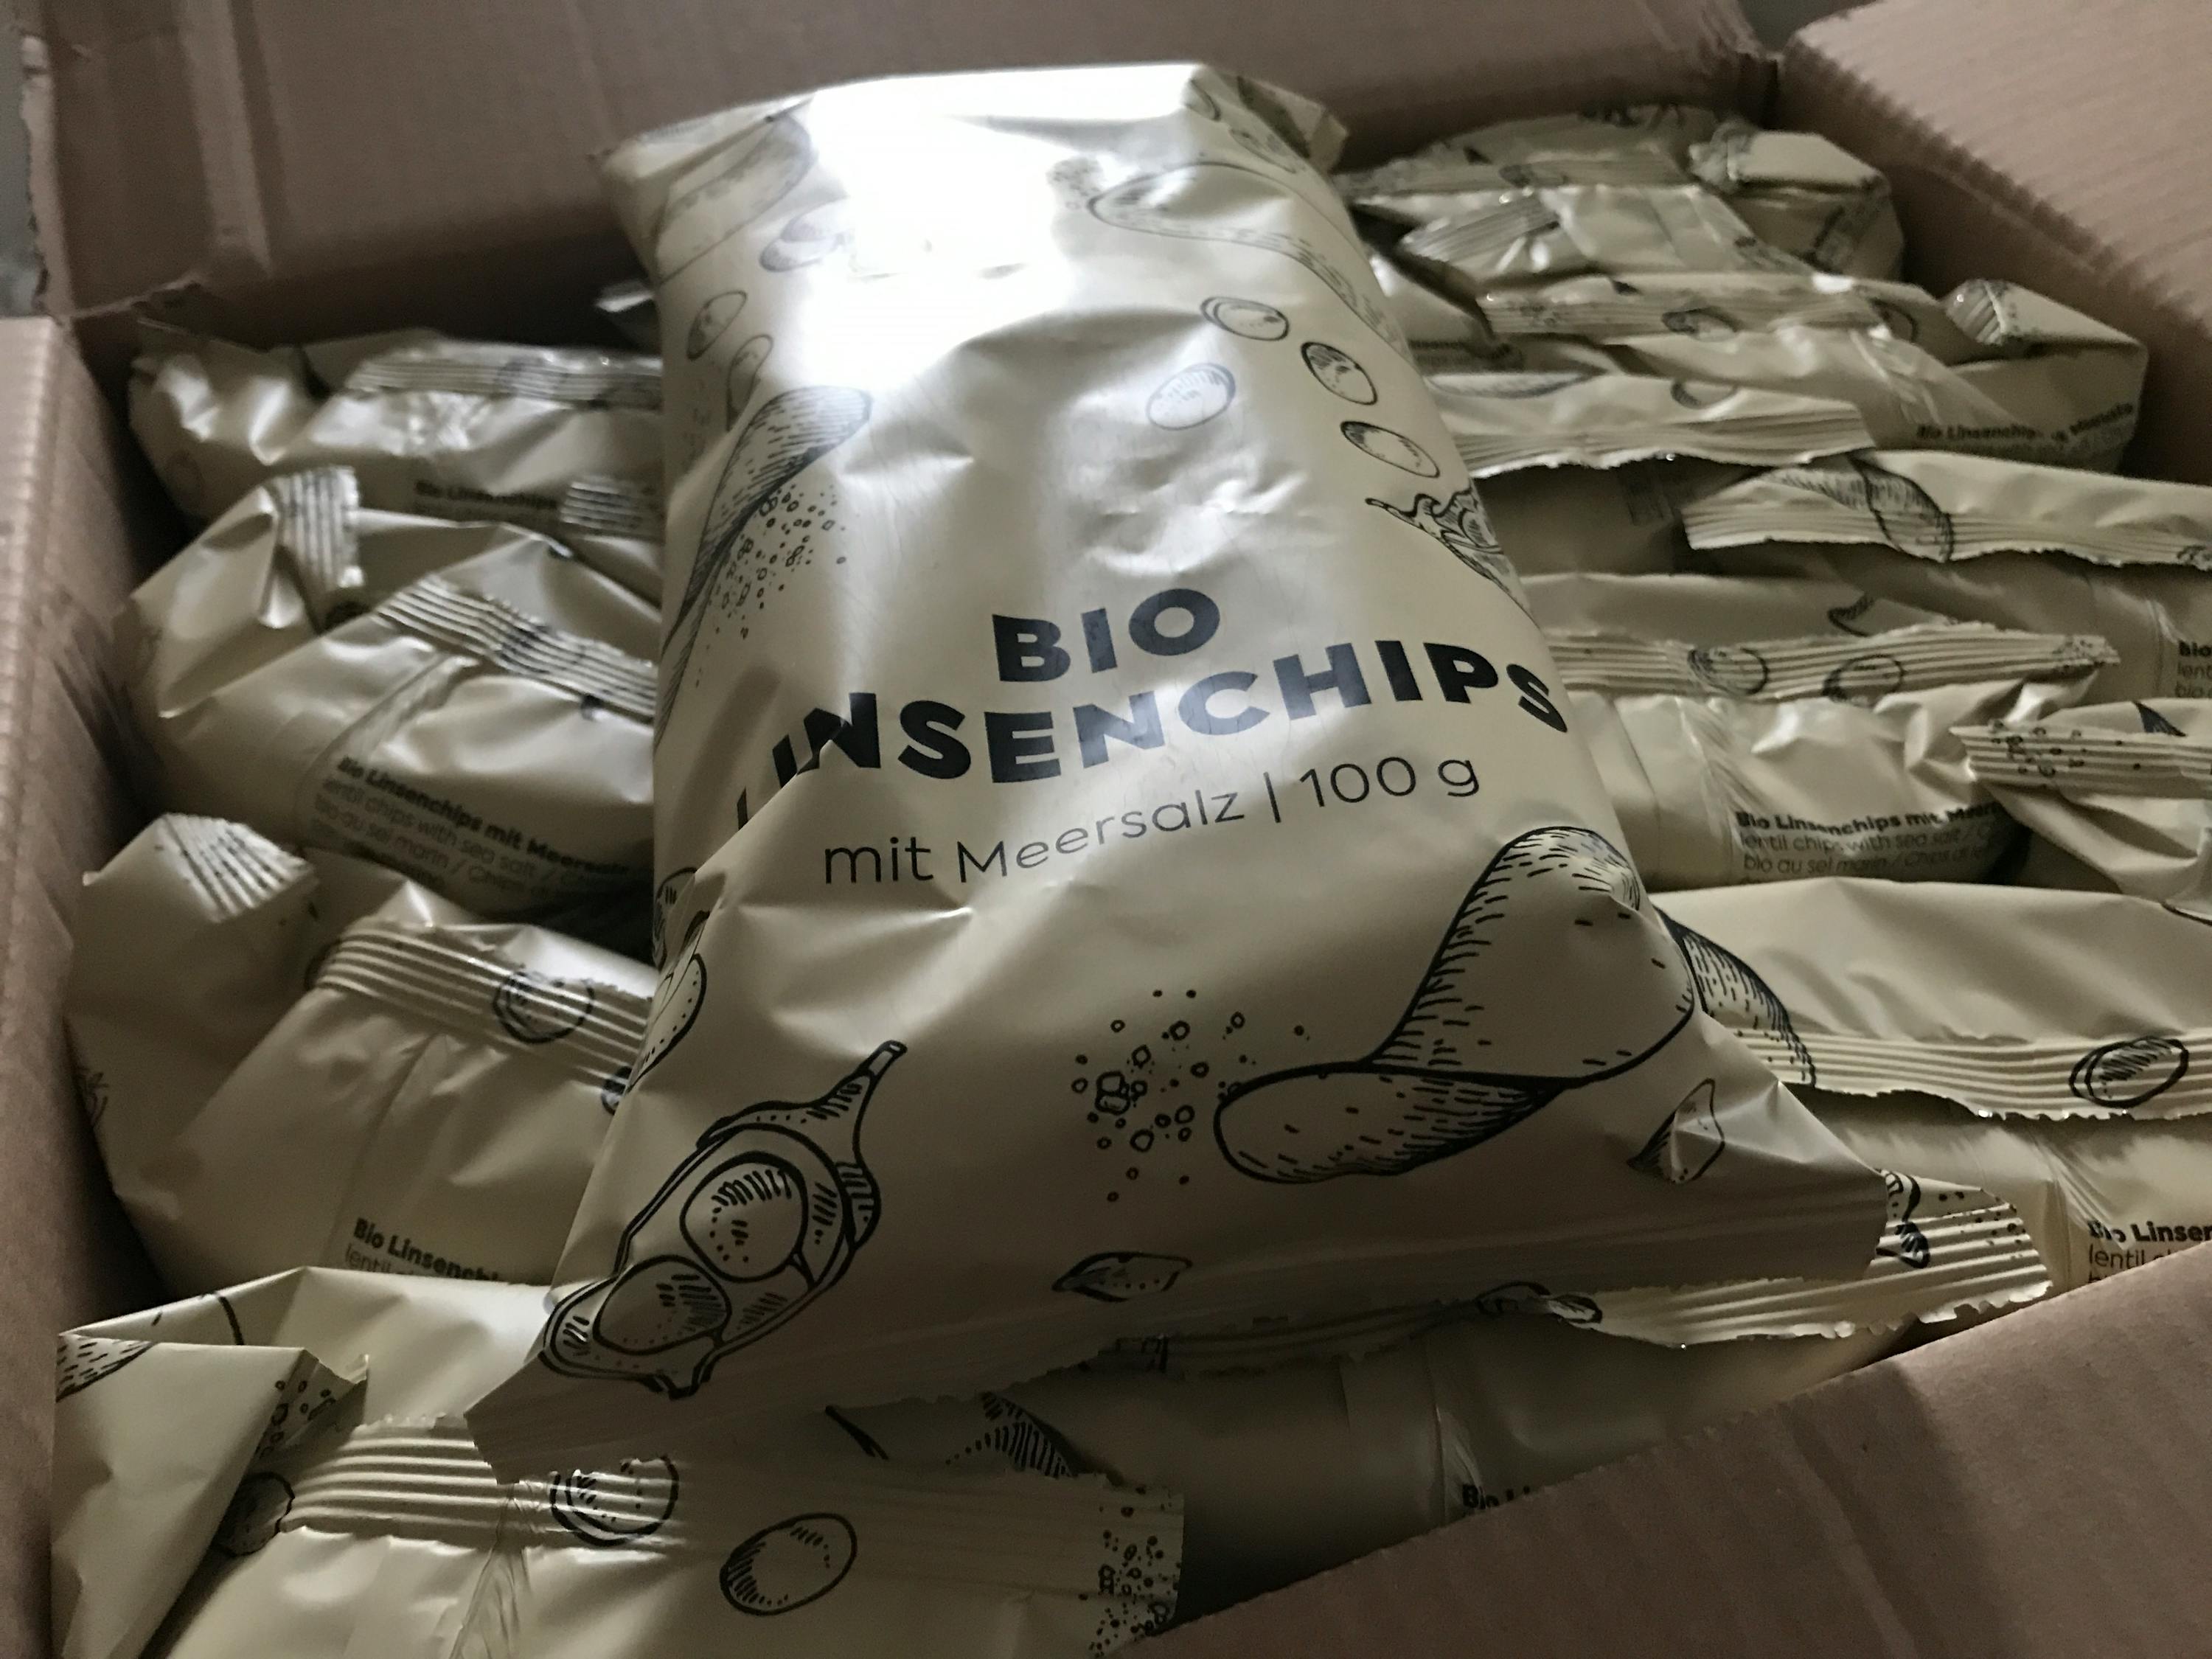 Bio Linsenchips mit Meersalz kaufen